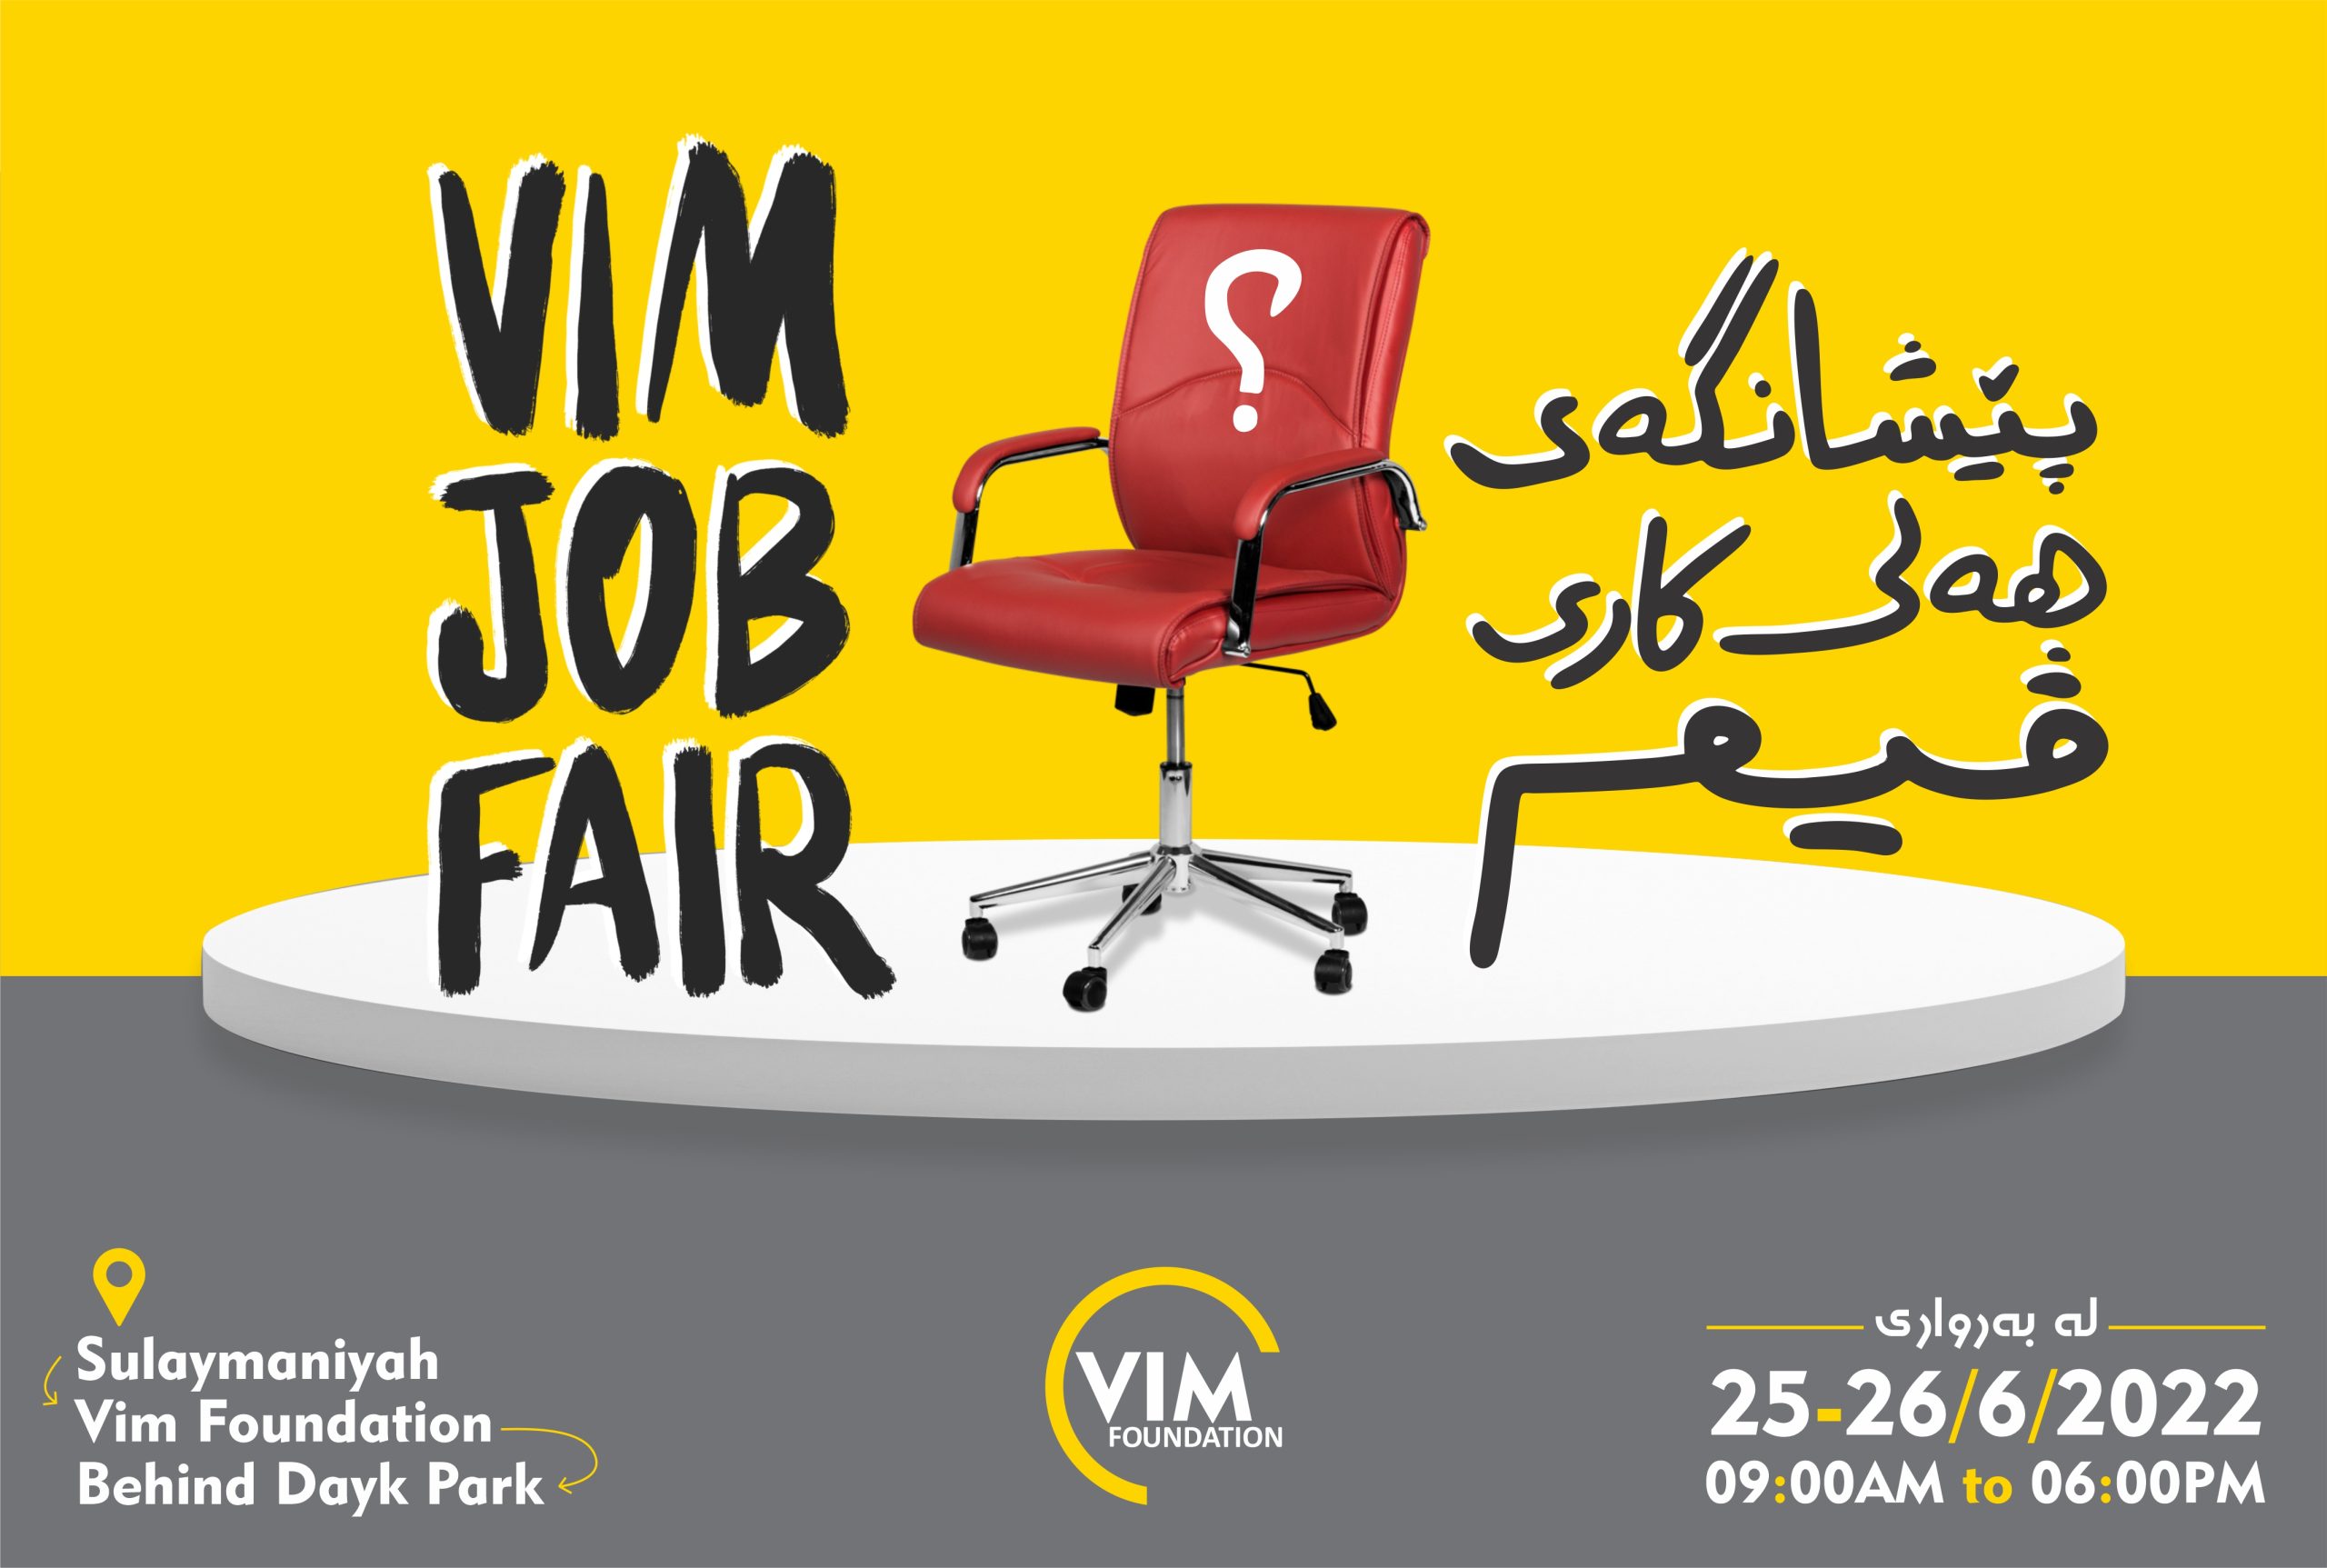 Vim Foundation organizes Vim Job Fair.